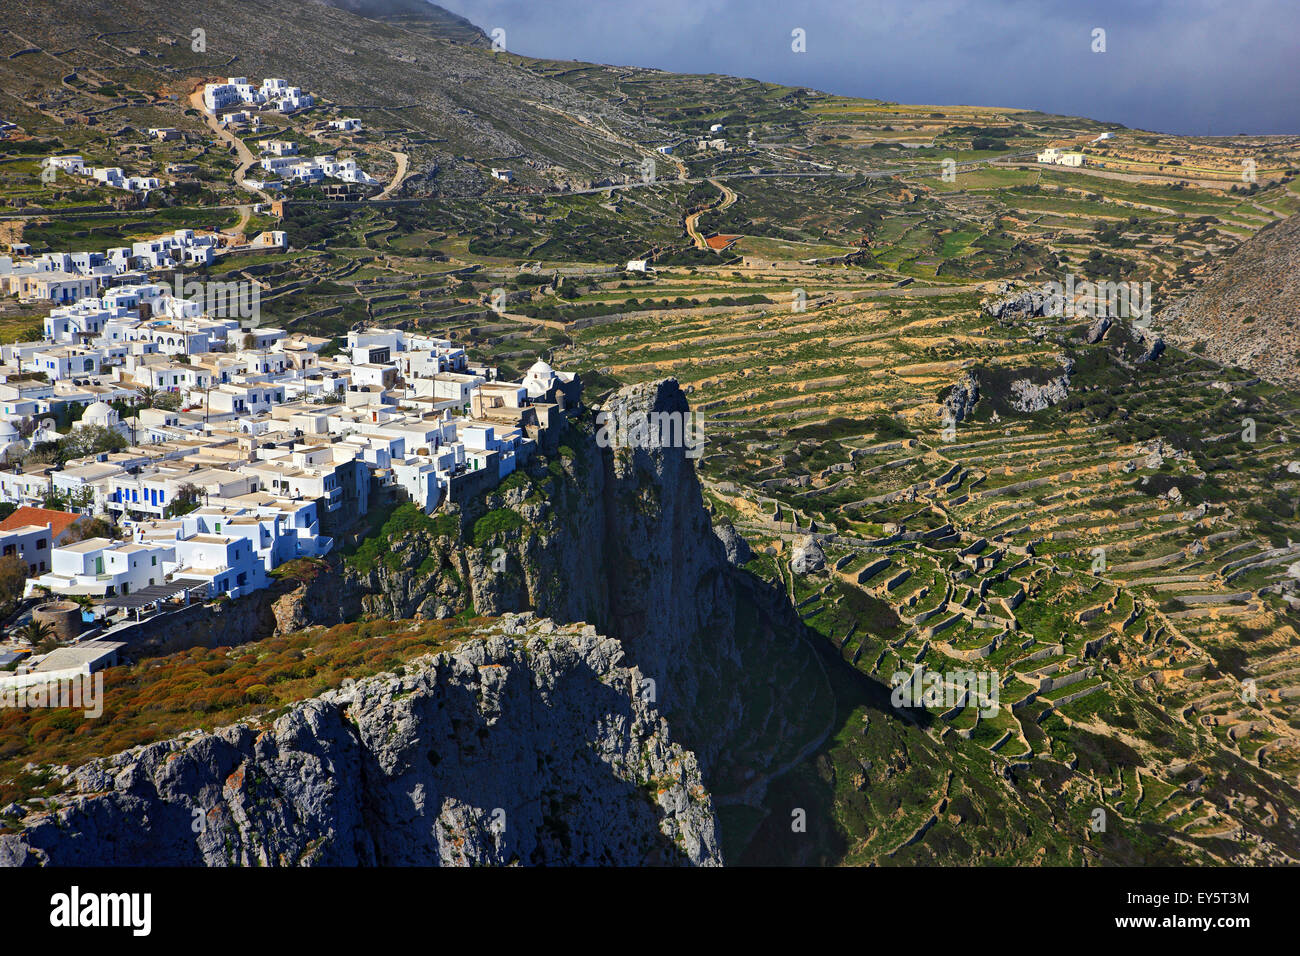 Die Chora ("Hauptstadt") von Folegandros, eines der schönsten Horas Kykladen, schwebt über einer Klippe von 300 m. Griechenland Stockfoto